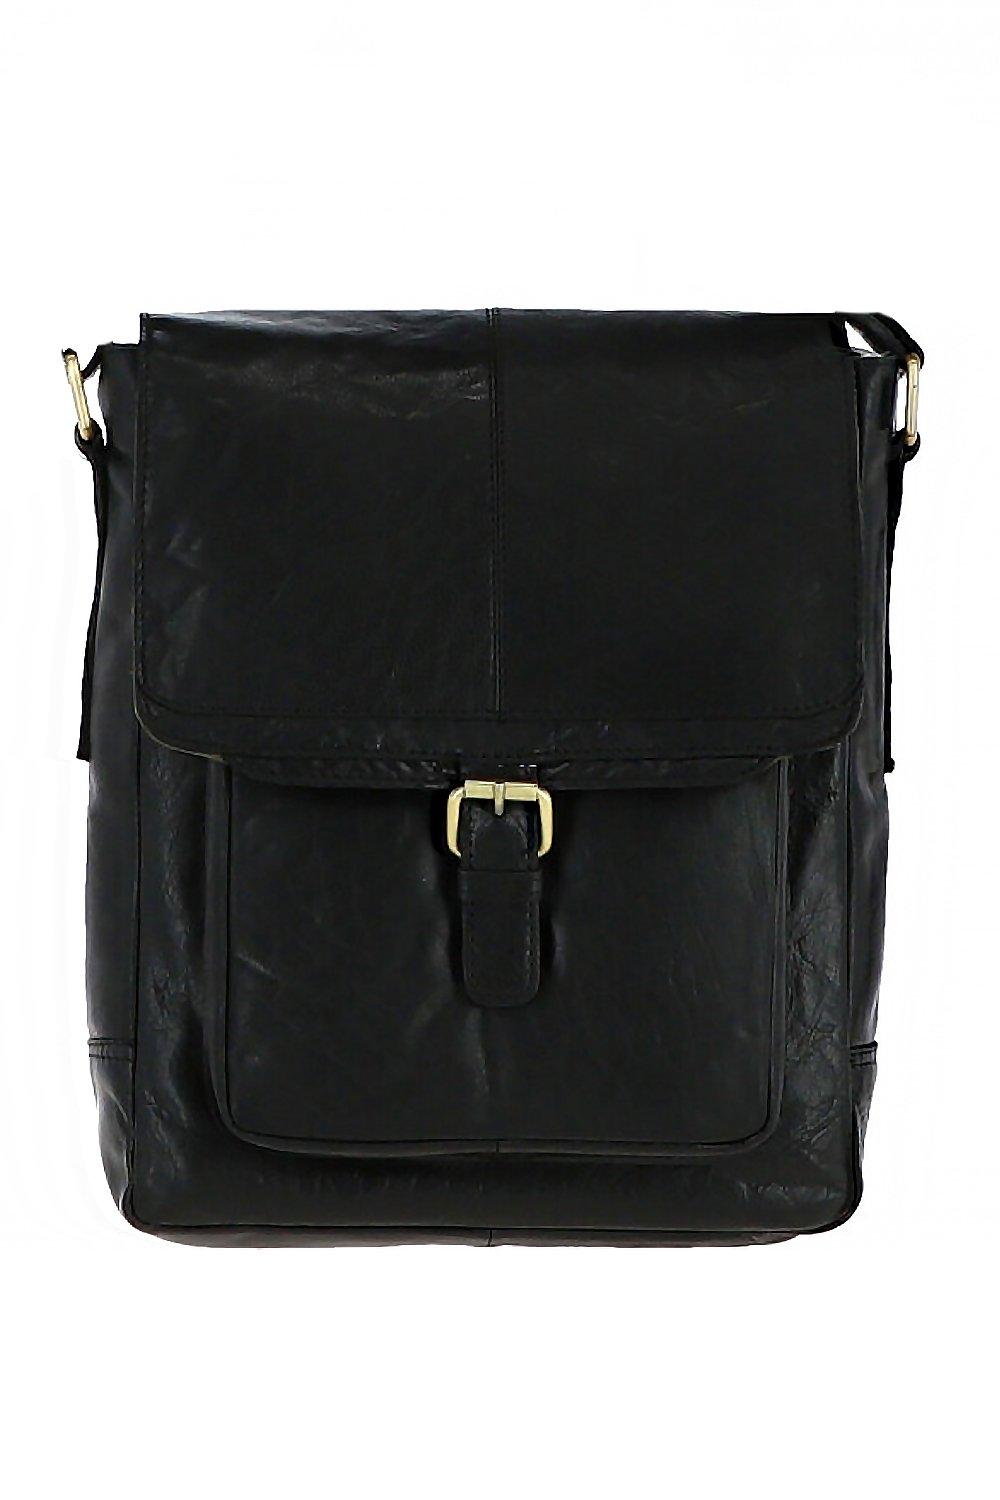 Дорожная сумка из винтажной кожи среднего размера Ashwood Leather, черный удобный регулируемый ремень для переноски ребенка на весну и лето